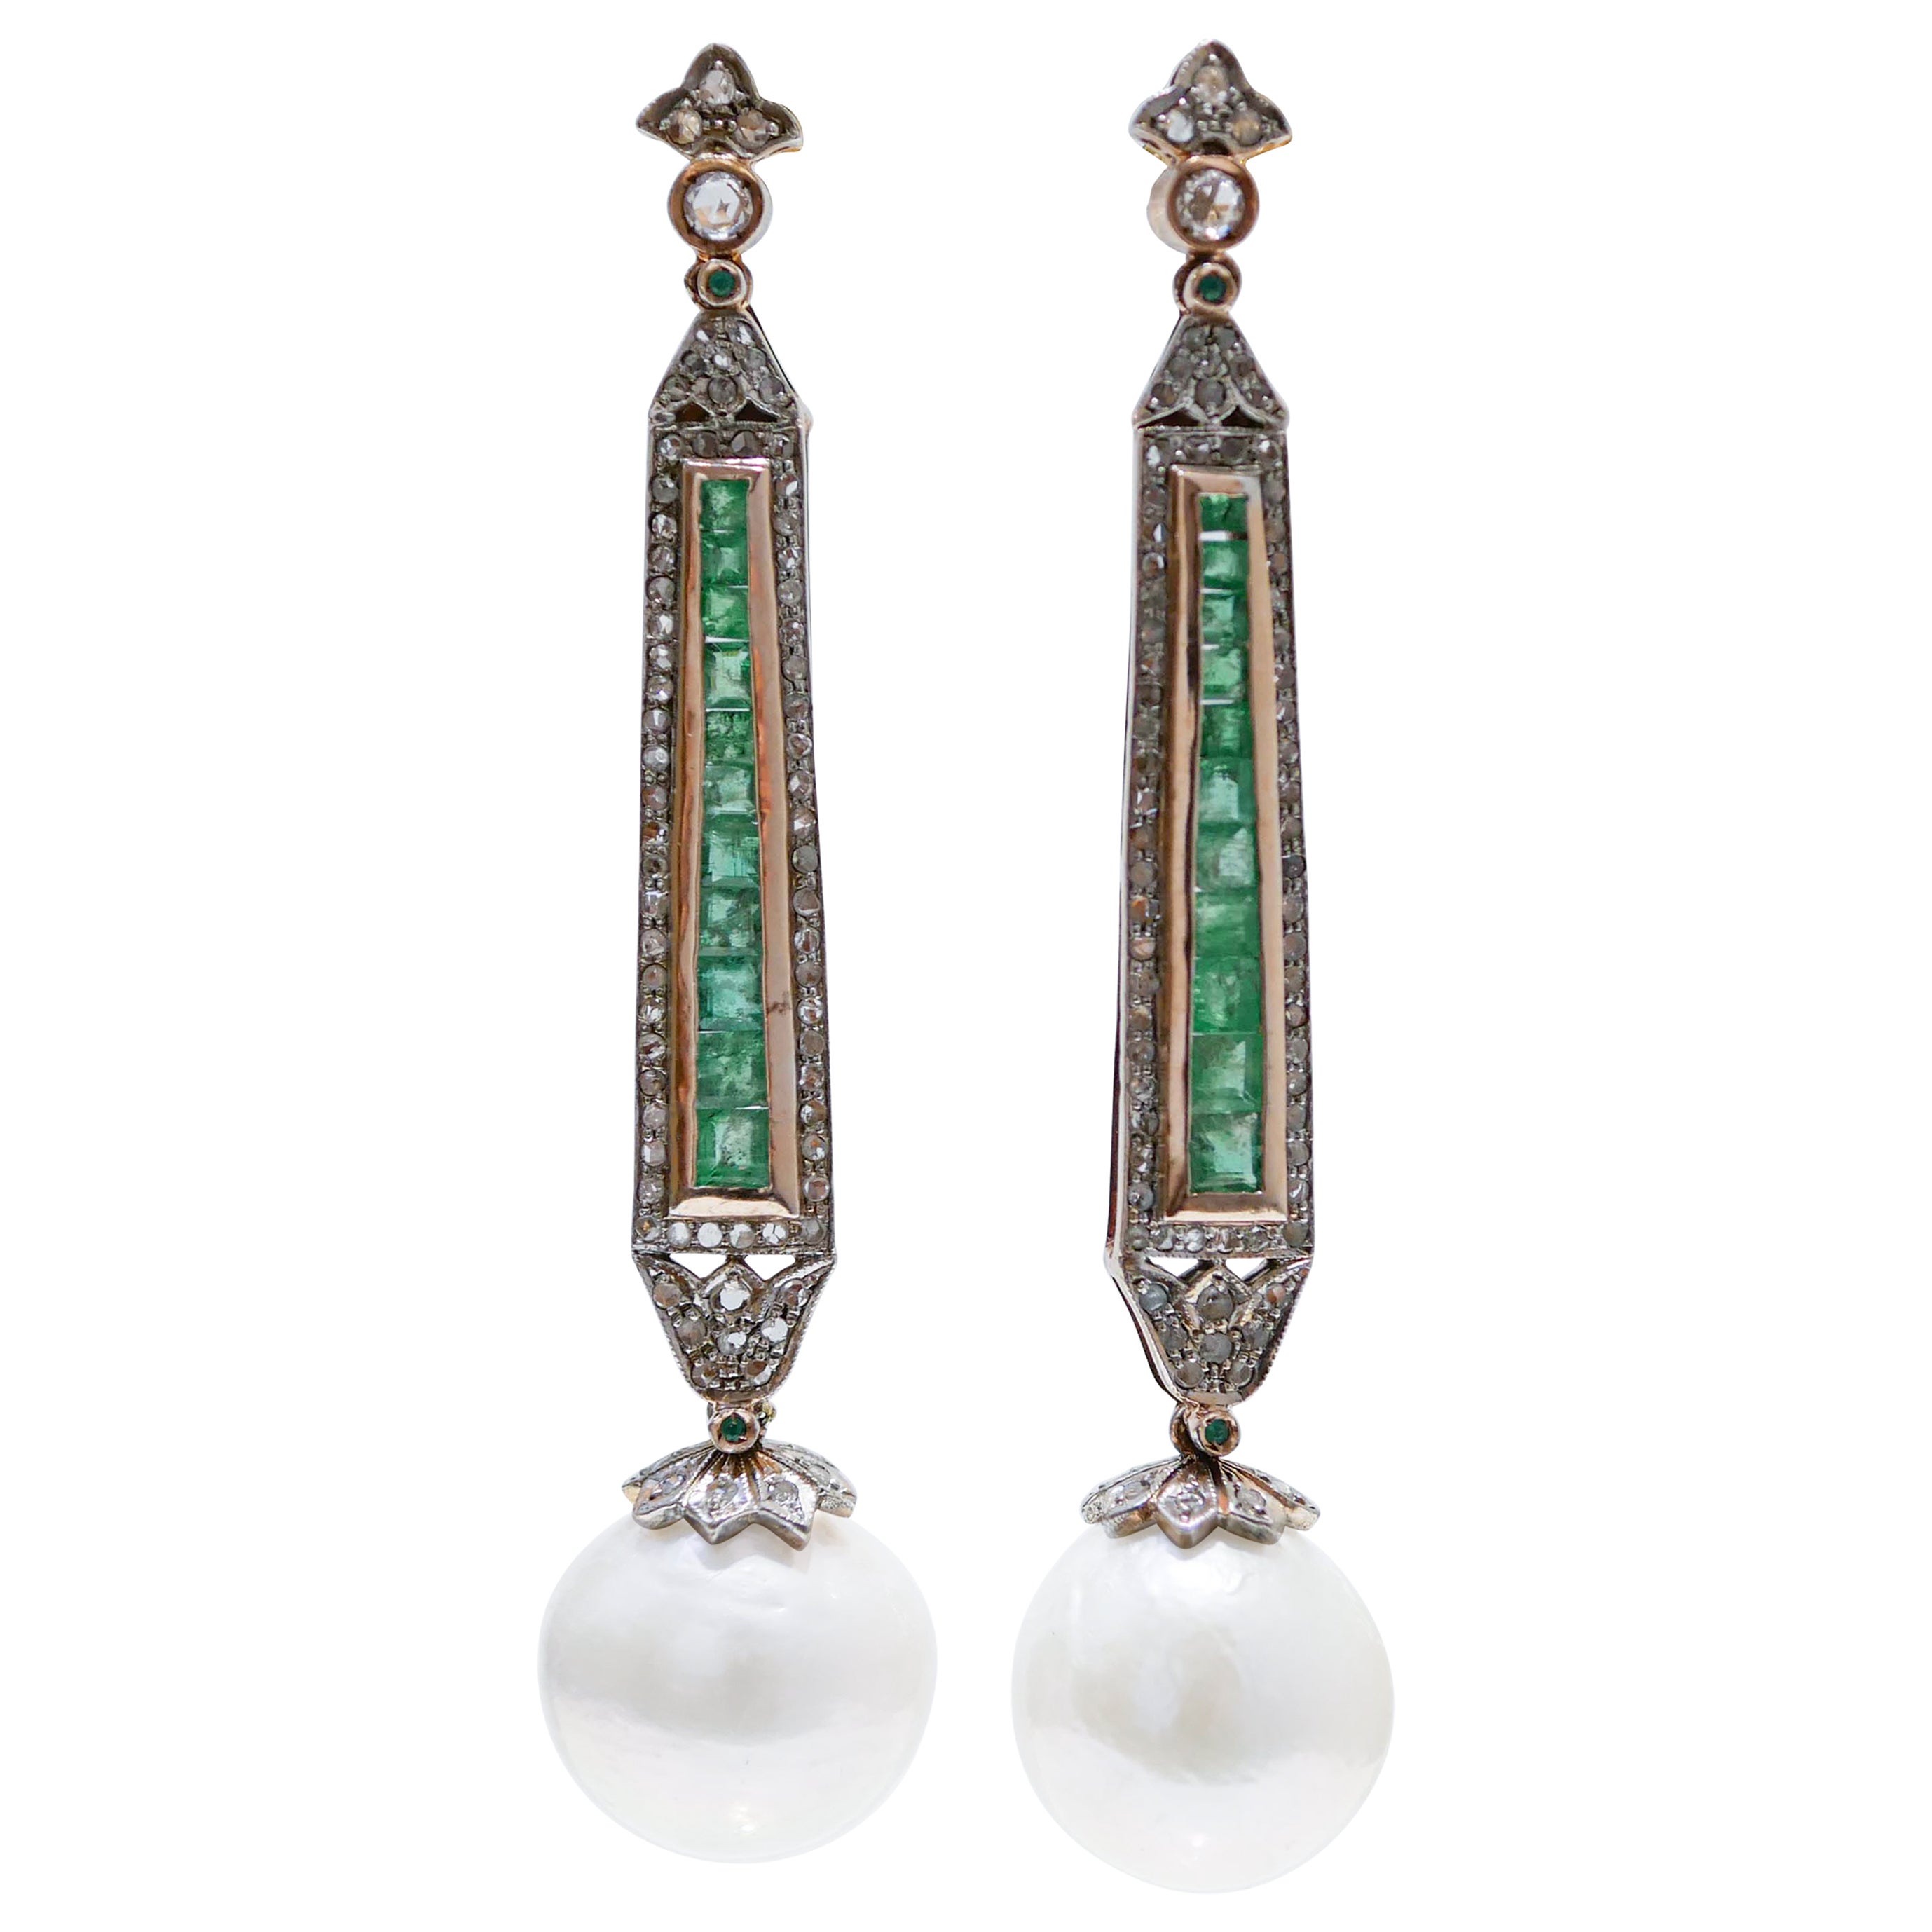 Ohrringe aus 14 Karat Roségold mit grauen Perlen, Smaragden, Diamanten und Silber.